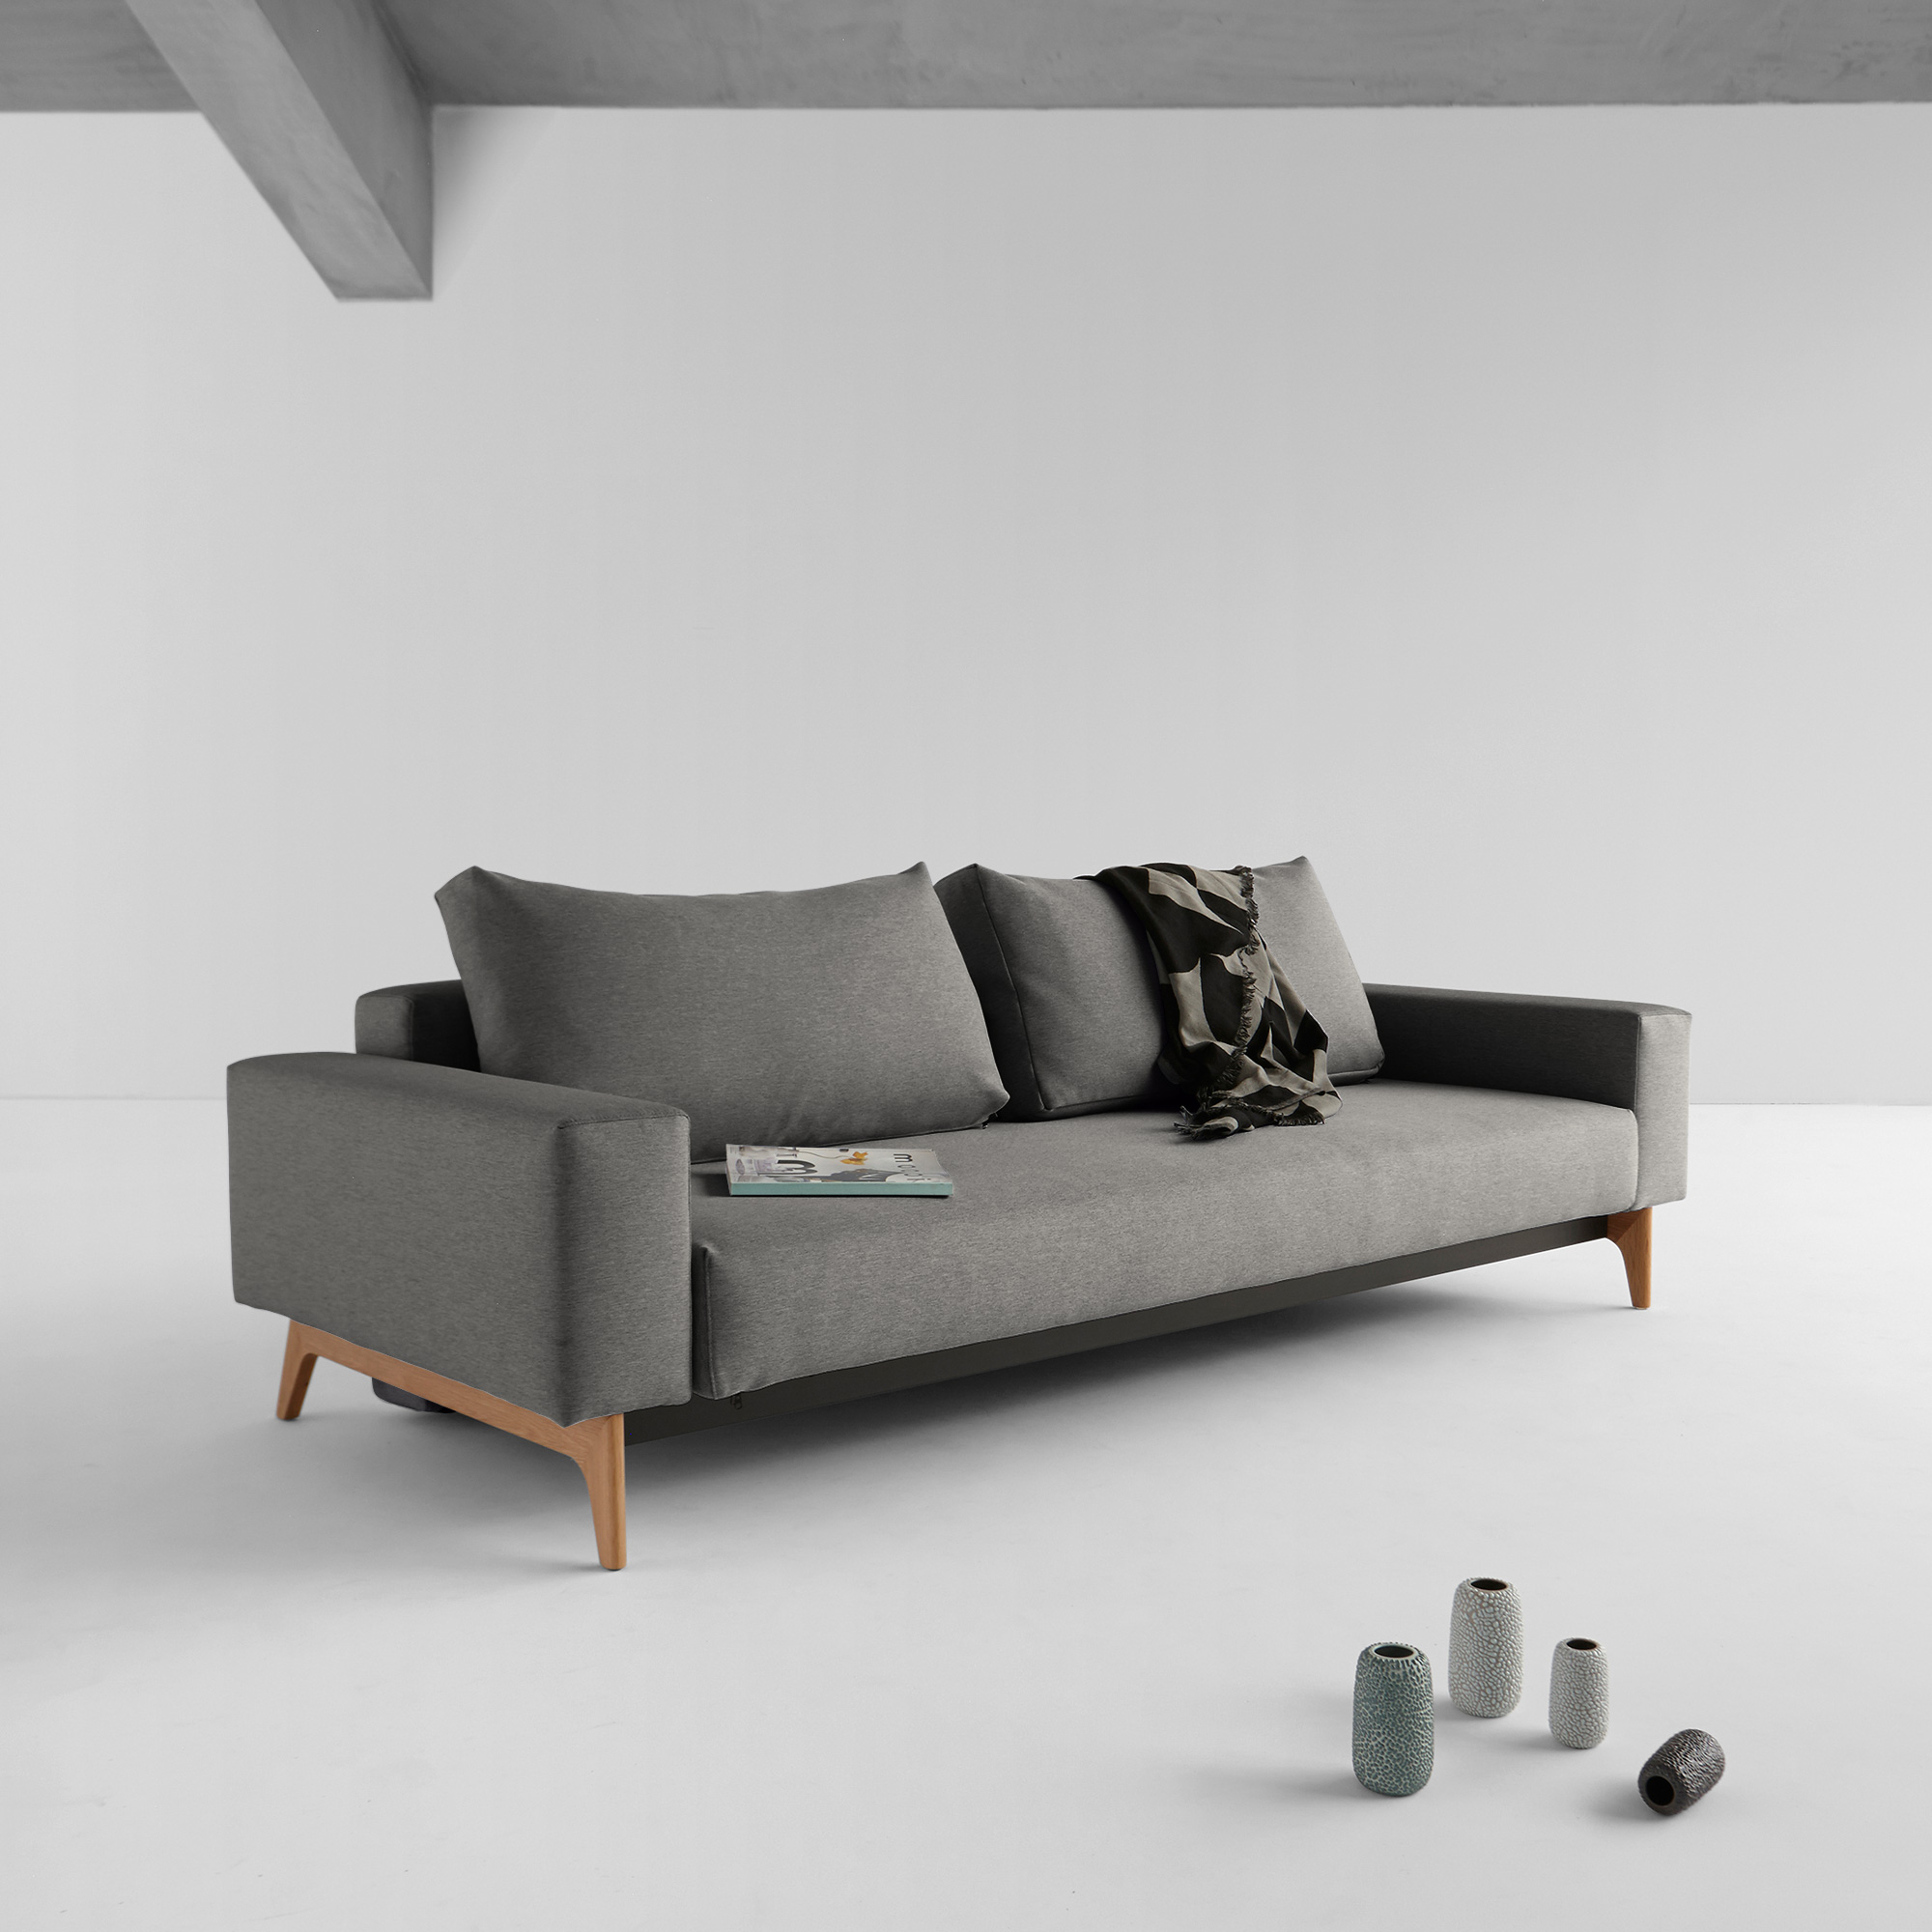 At bygge grænse Natura Innovation Living Idun sofa bed - 95-725080521-IDUN | REUTER